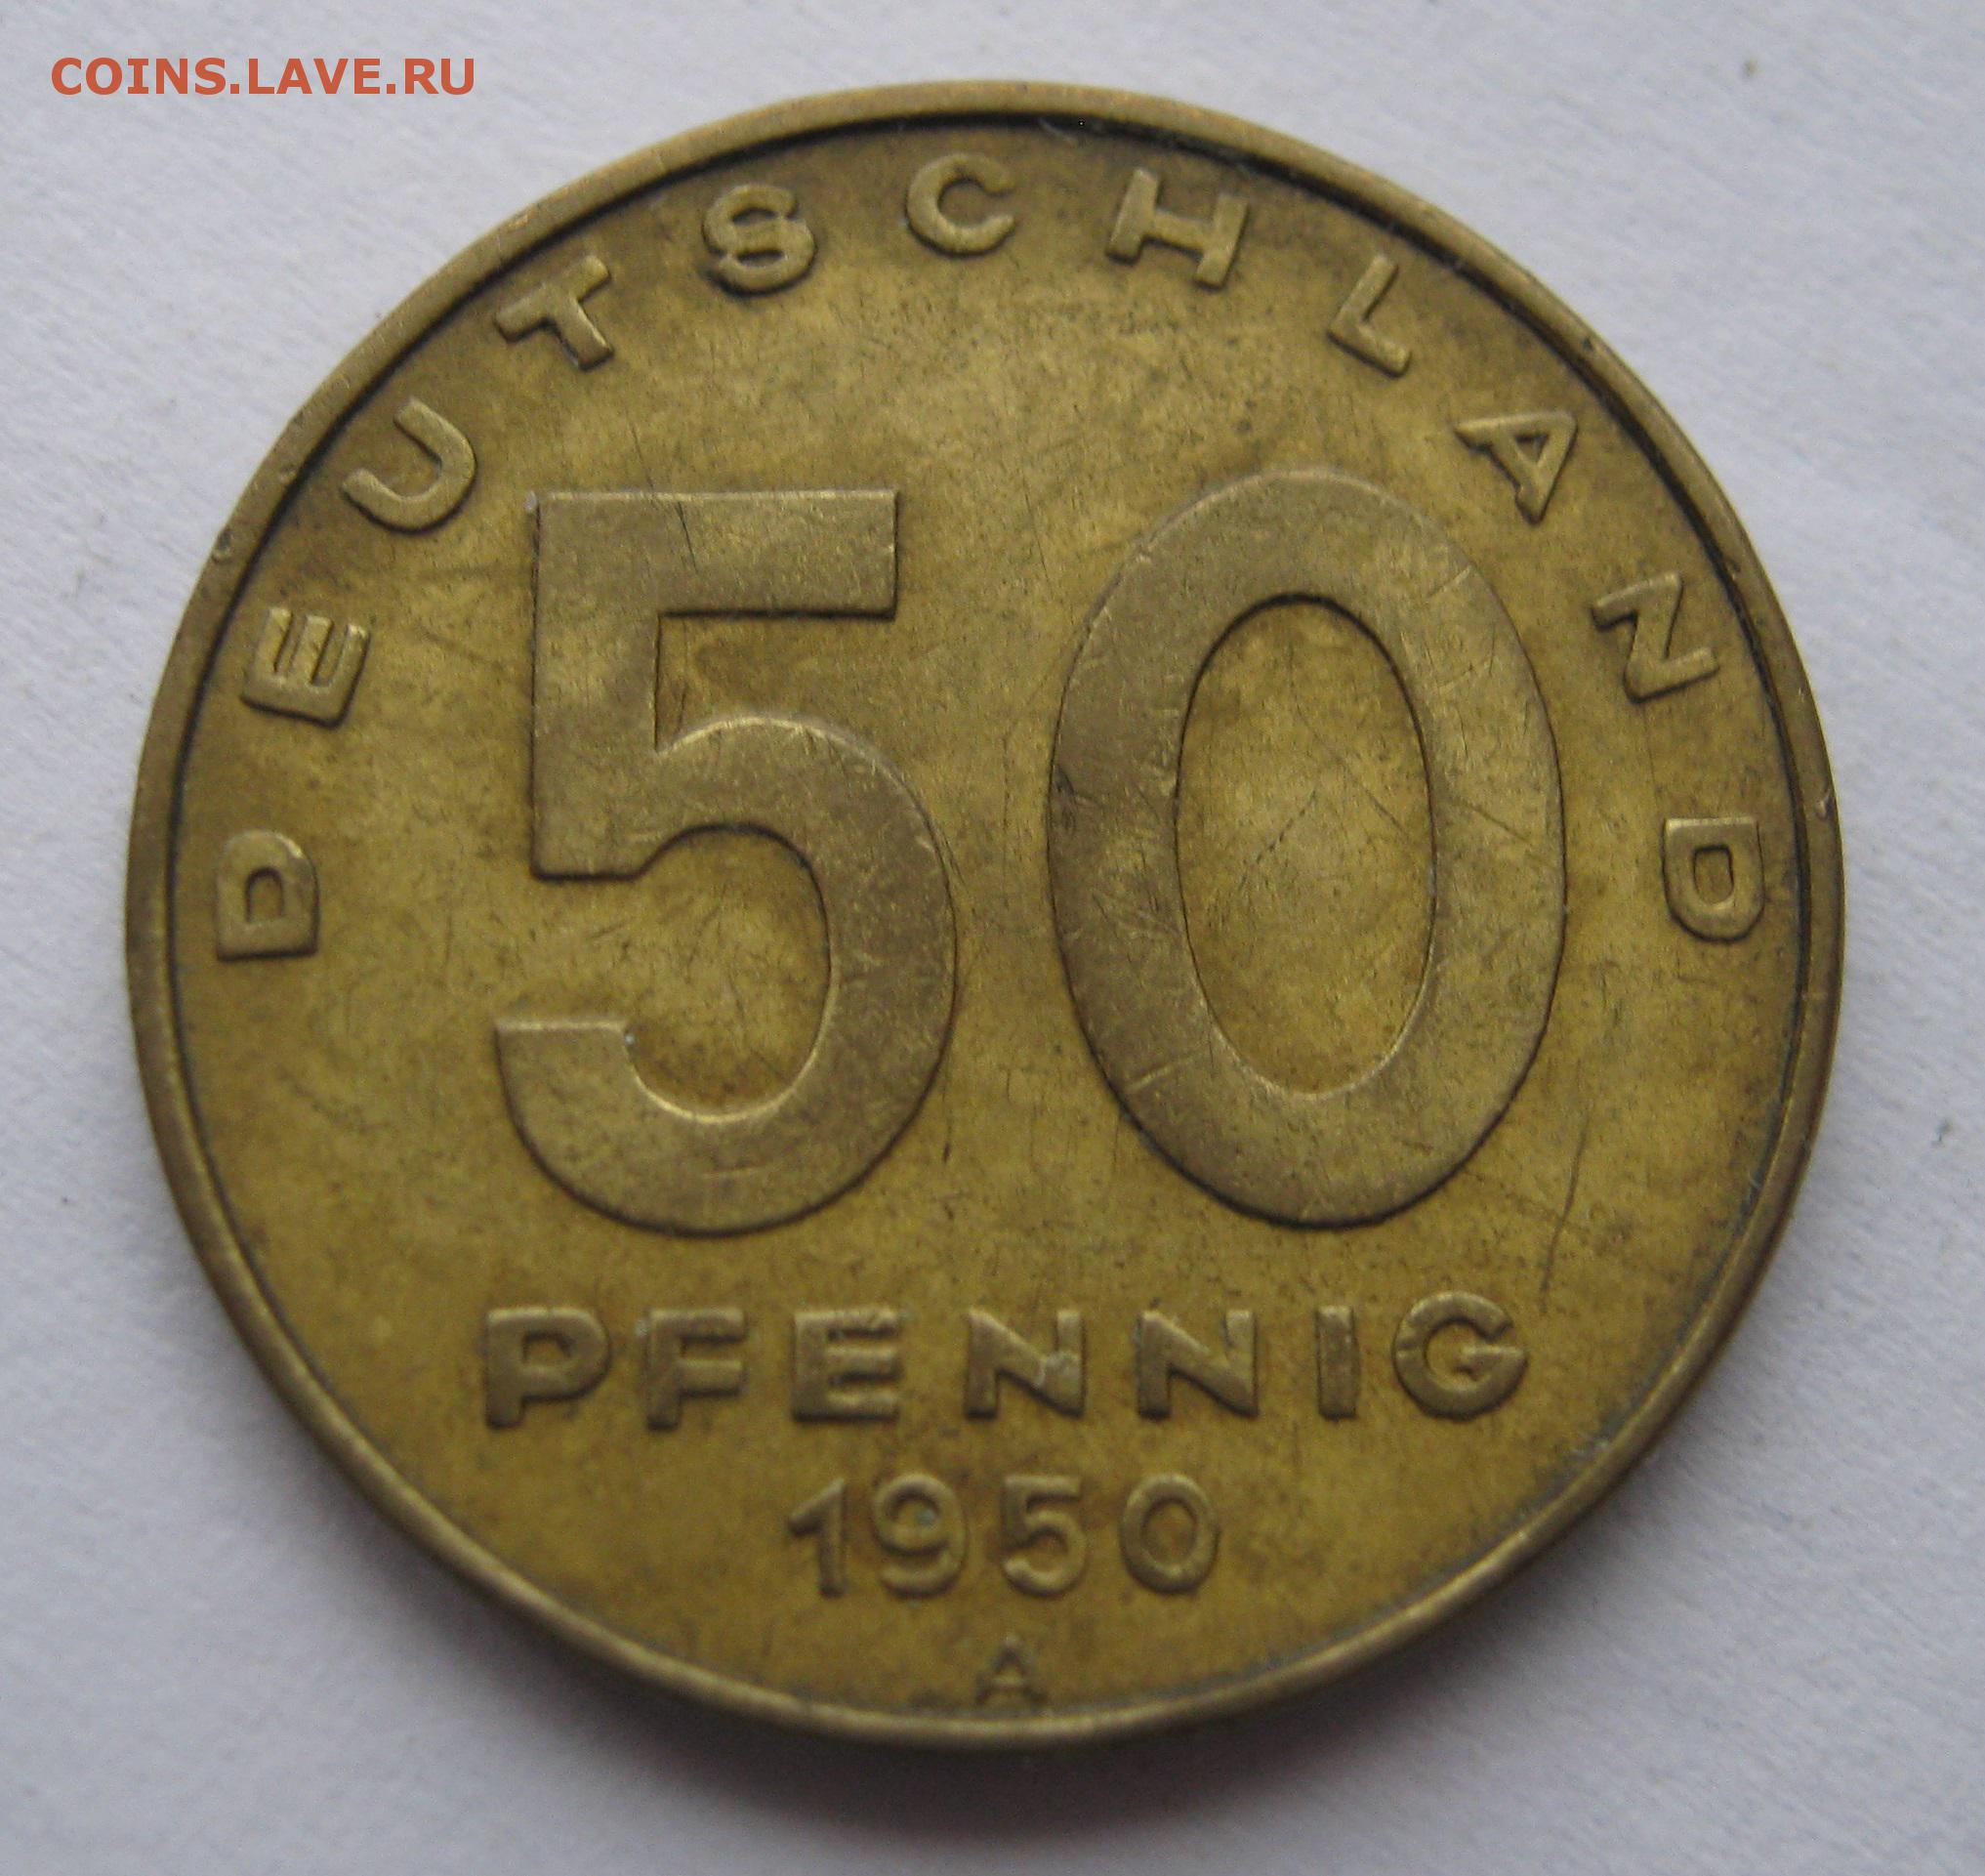 Редкость в россии. Монета Румынии 50 Lei 1991г. Монета 5 румынских лей 1991. 50 Лей. 50 Lei в рублях.